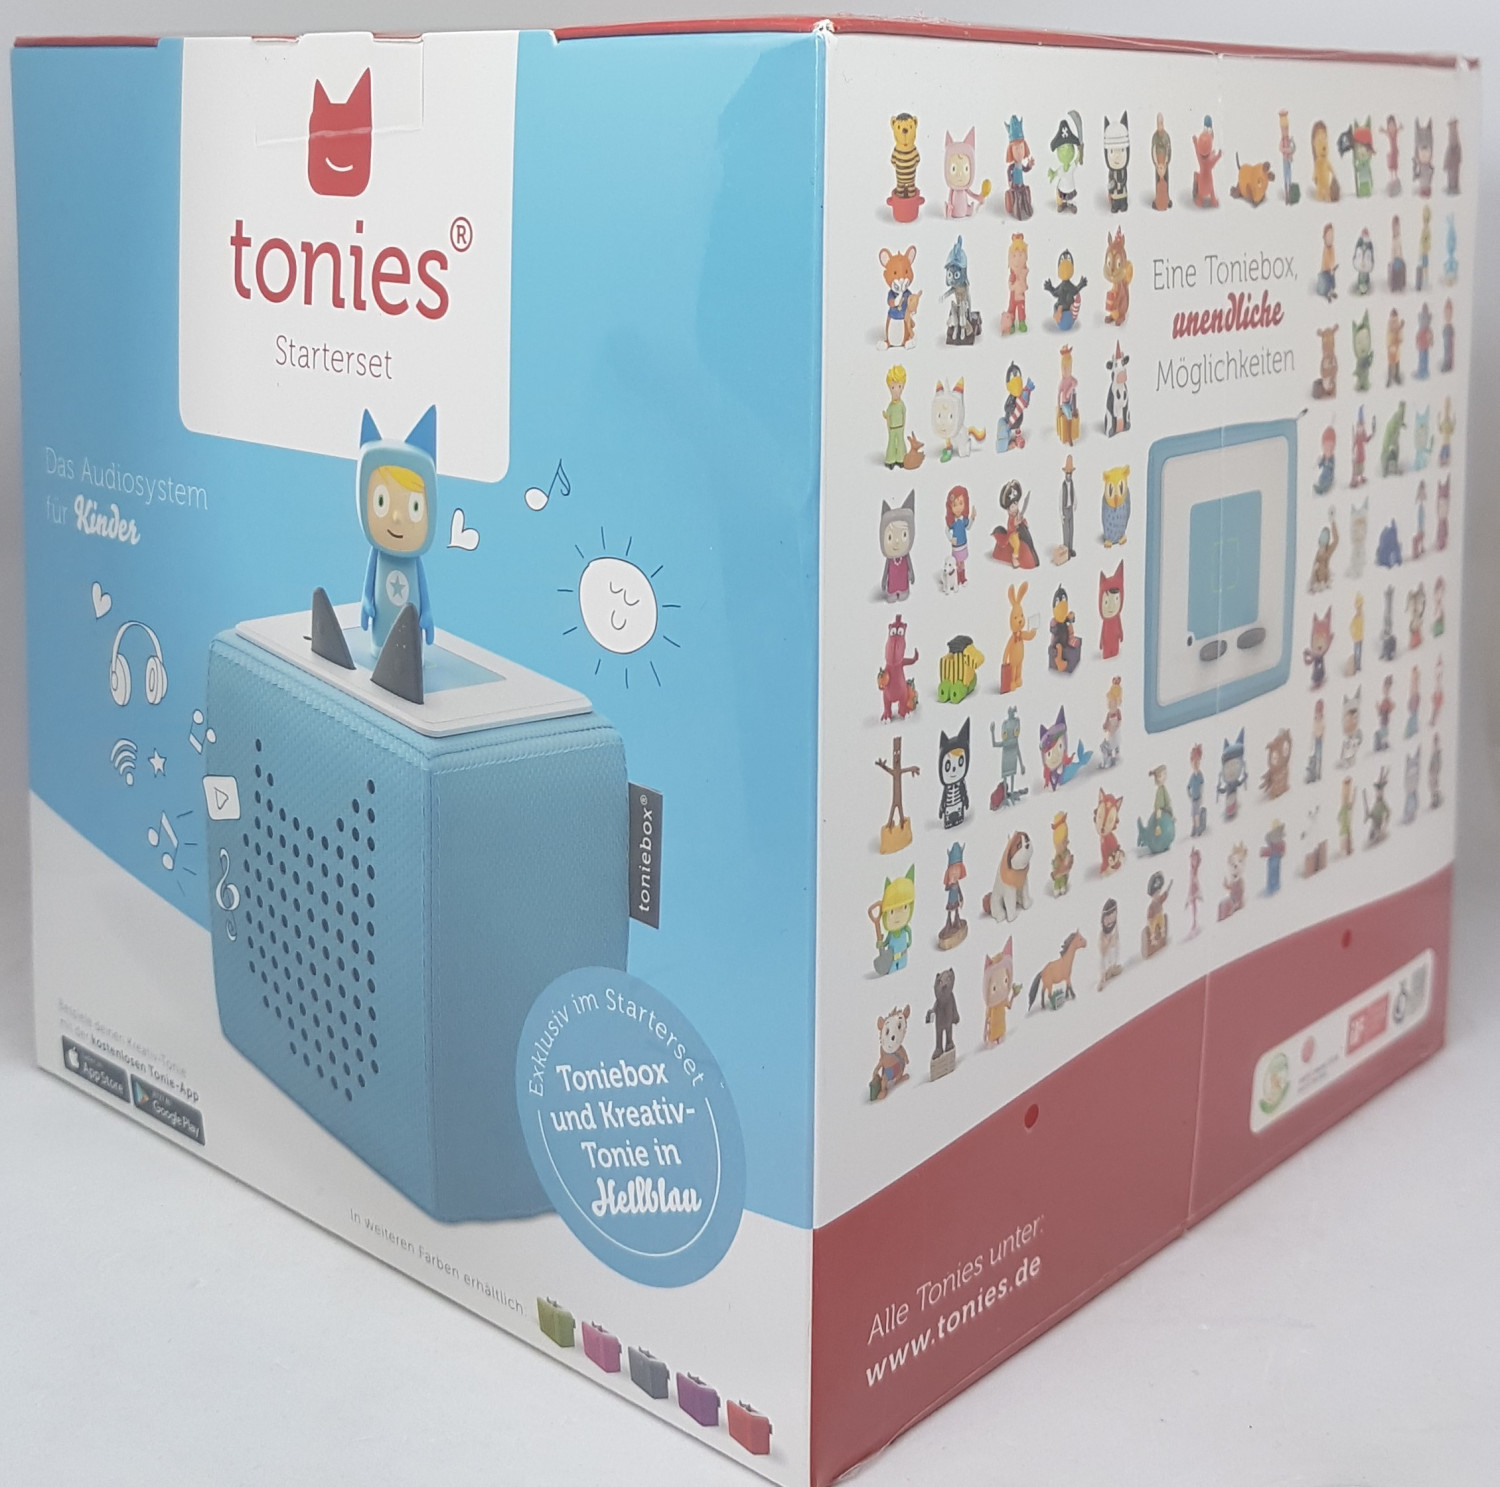 tonies Toniebox Kit de démarrage comprenant 1 personnage créatif